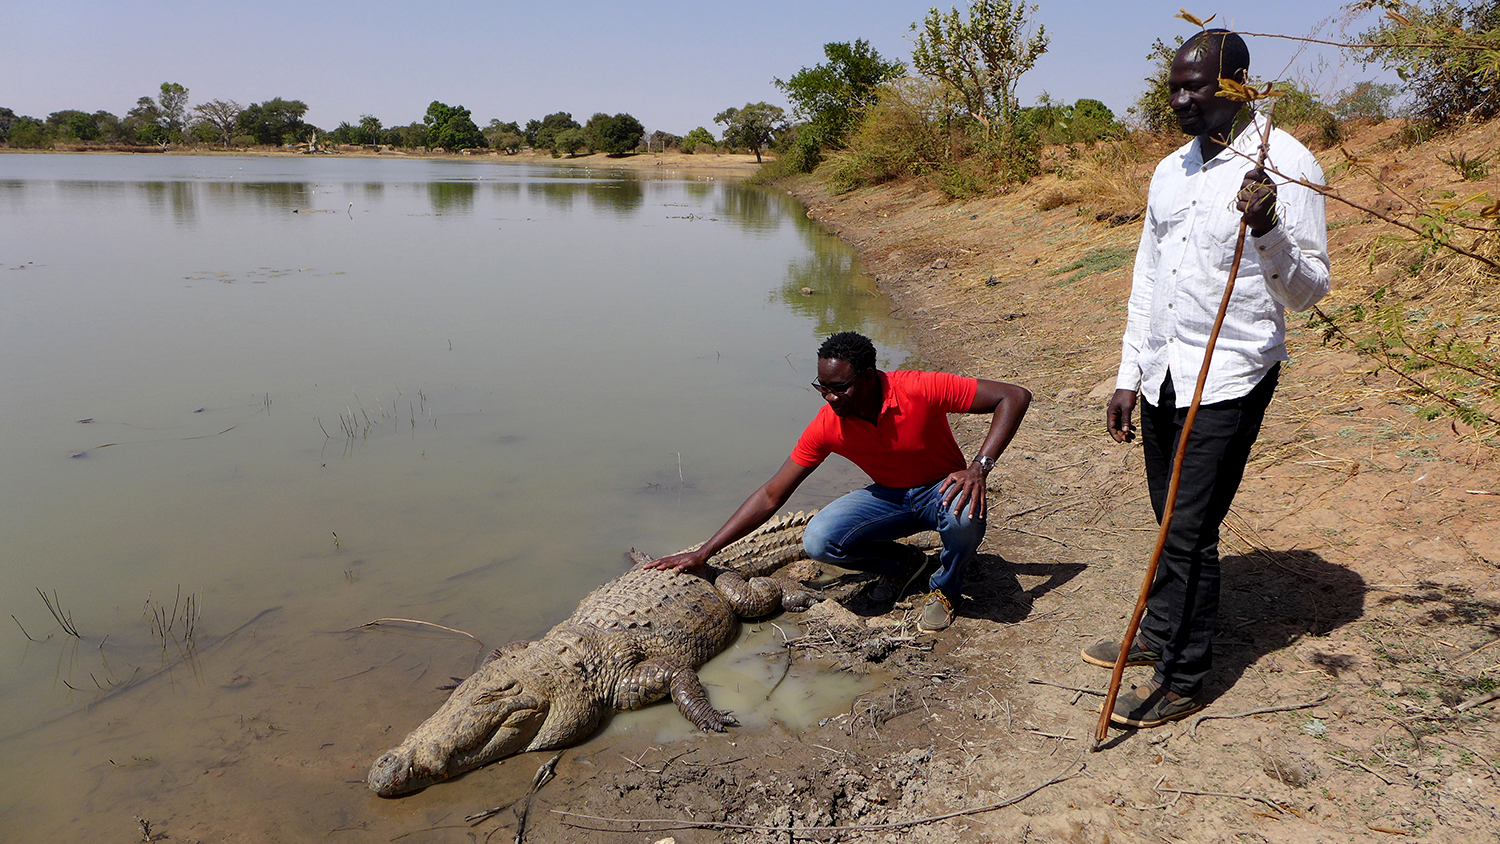 Con người và cá sấu đã chung sống hòa thuận suốt hơn 500 năm qua tại Burkina Faso - Ảnh 3.